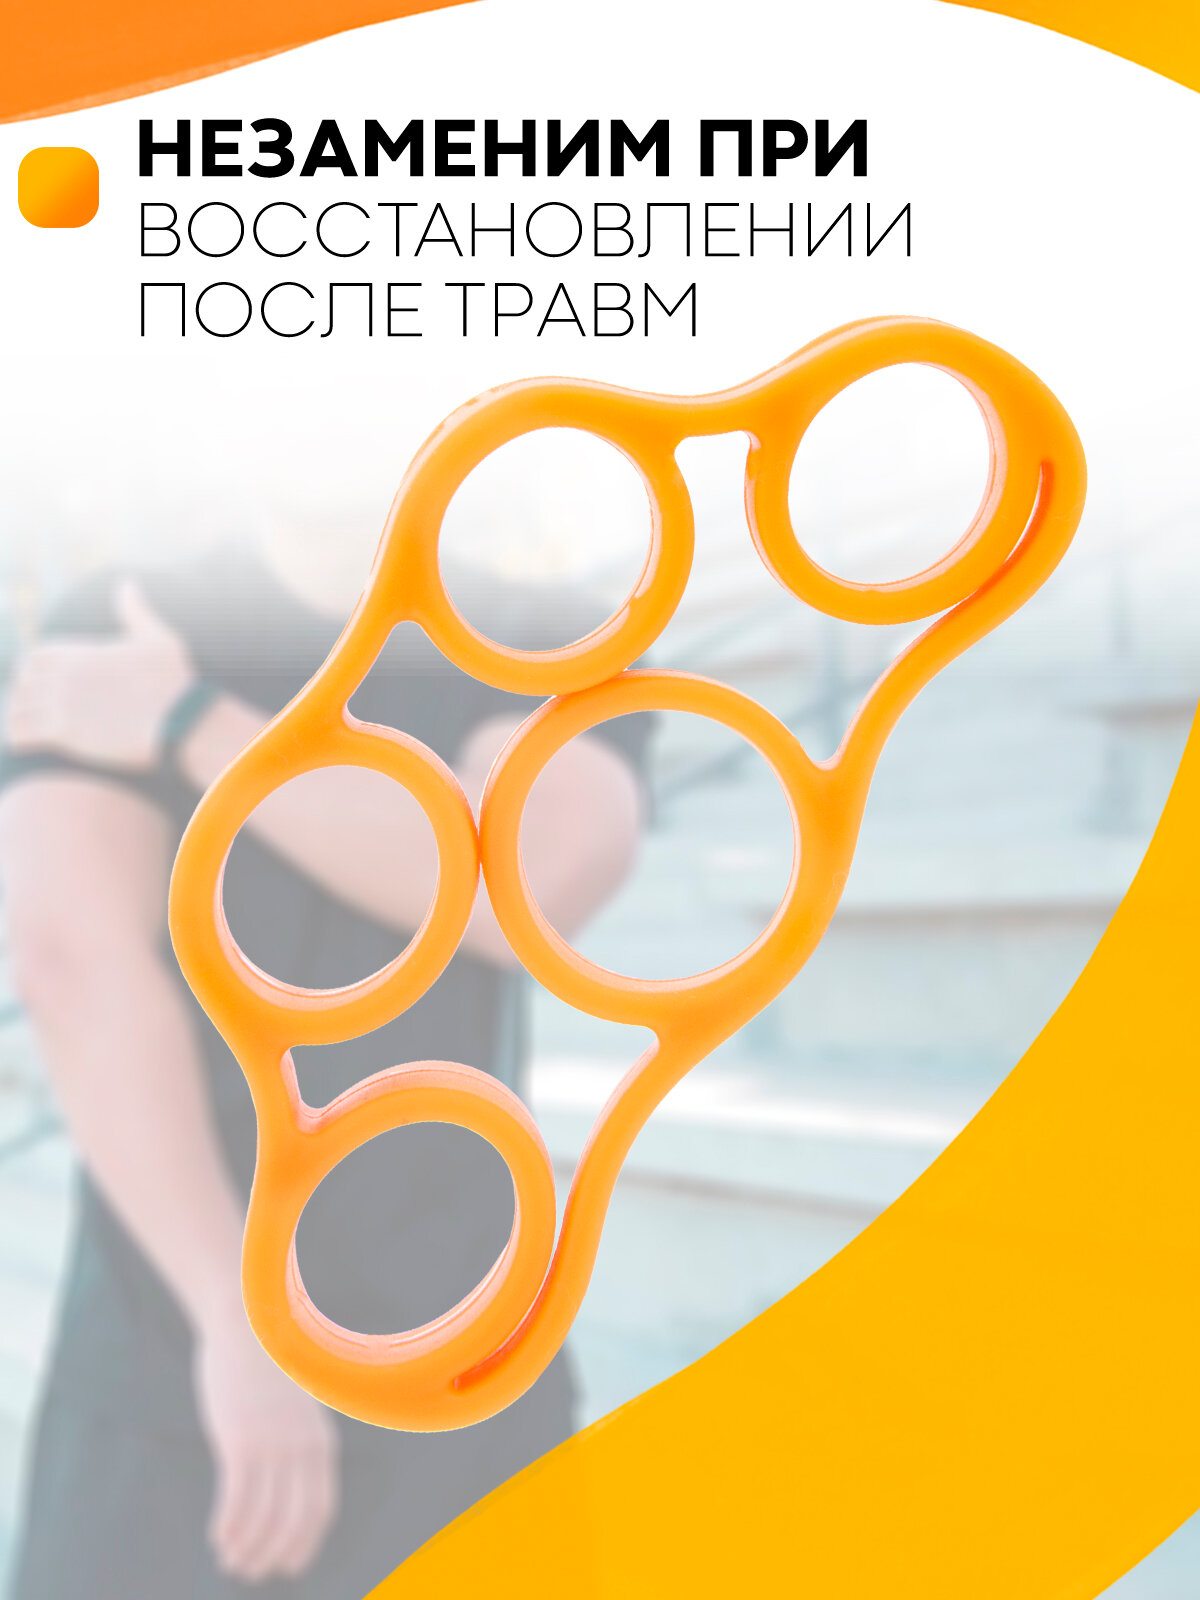 Кистевой эспандер для пальцев рук (подходит для тонких и средних размеров пальцев рук) изготовлен из мягкого силикона, цвет оранжевый, нагрузка 5 кг